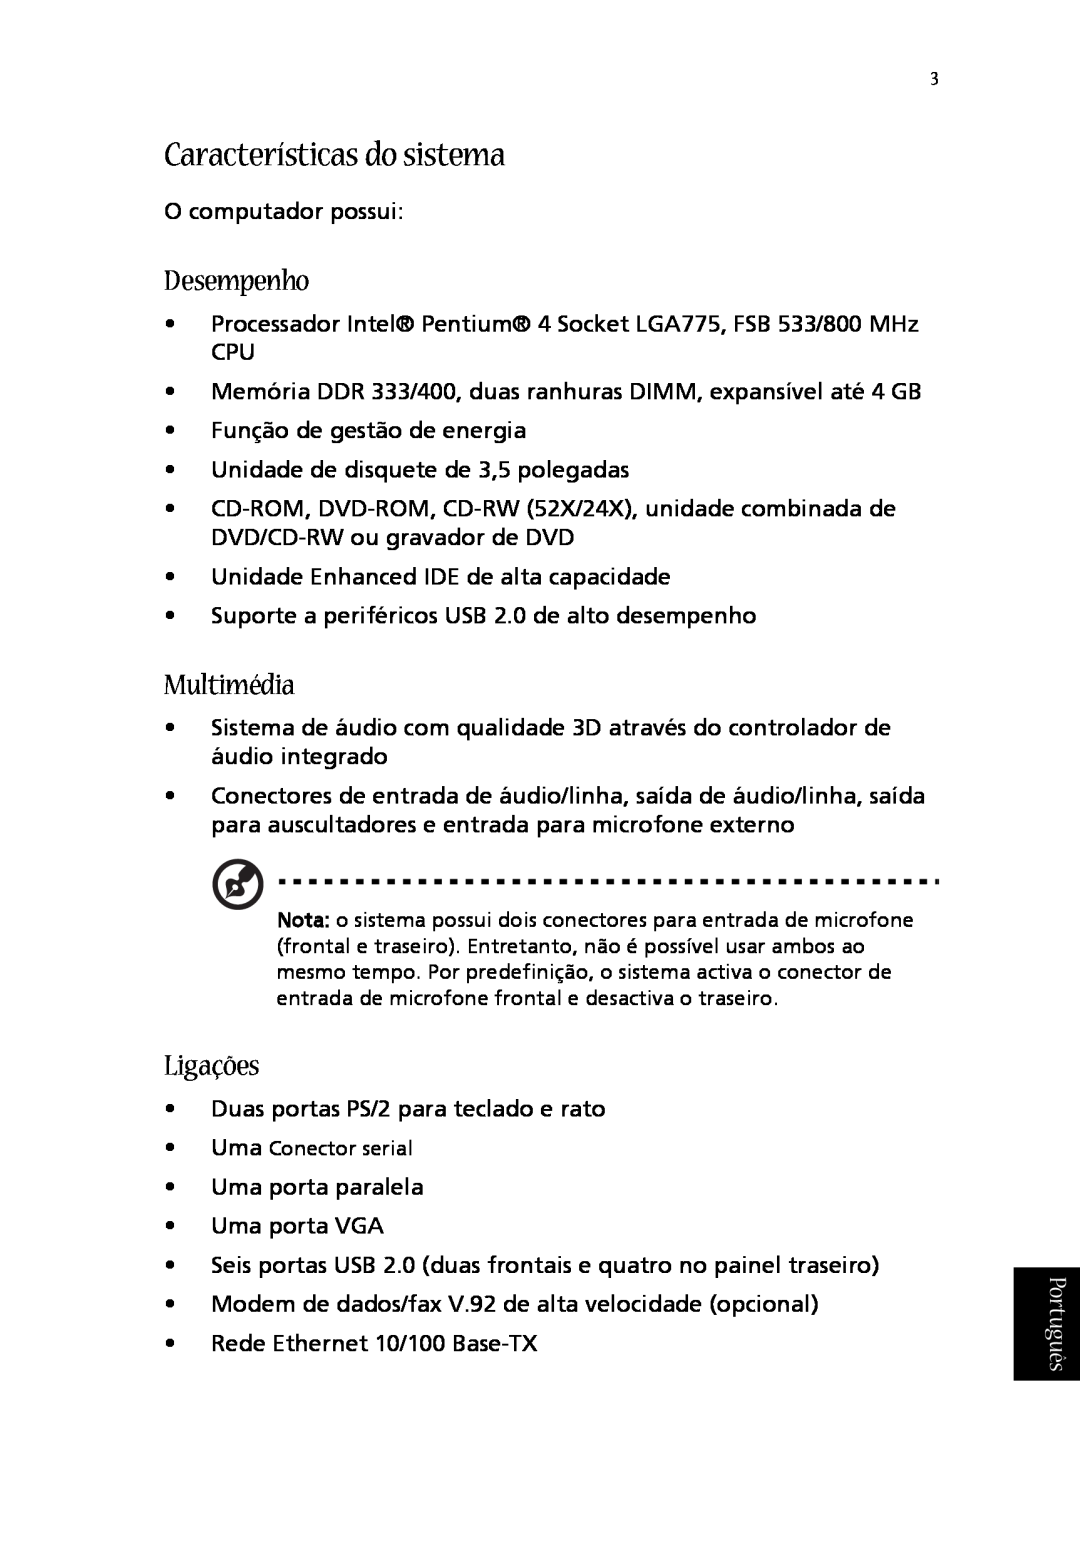 Acer T600 manual do utilizador Características do sistema, Desempenho, Multimédia, Ligações, Português 